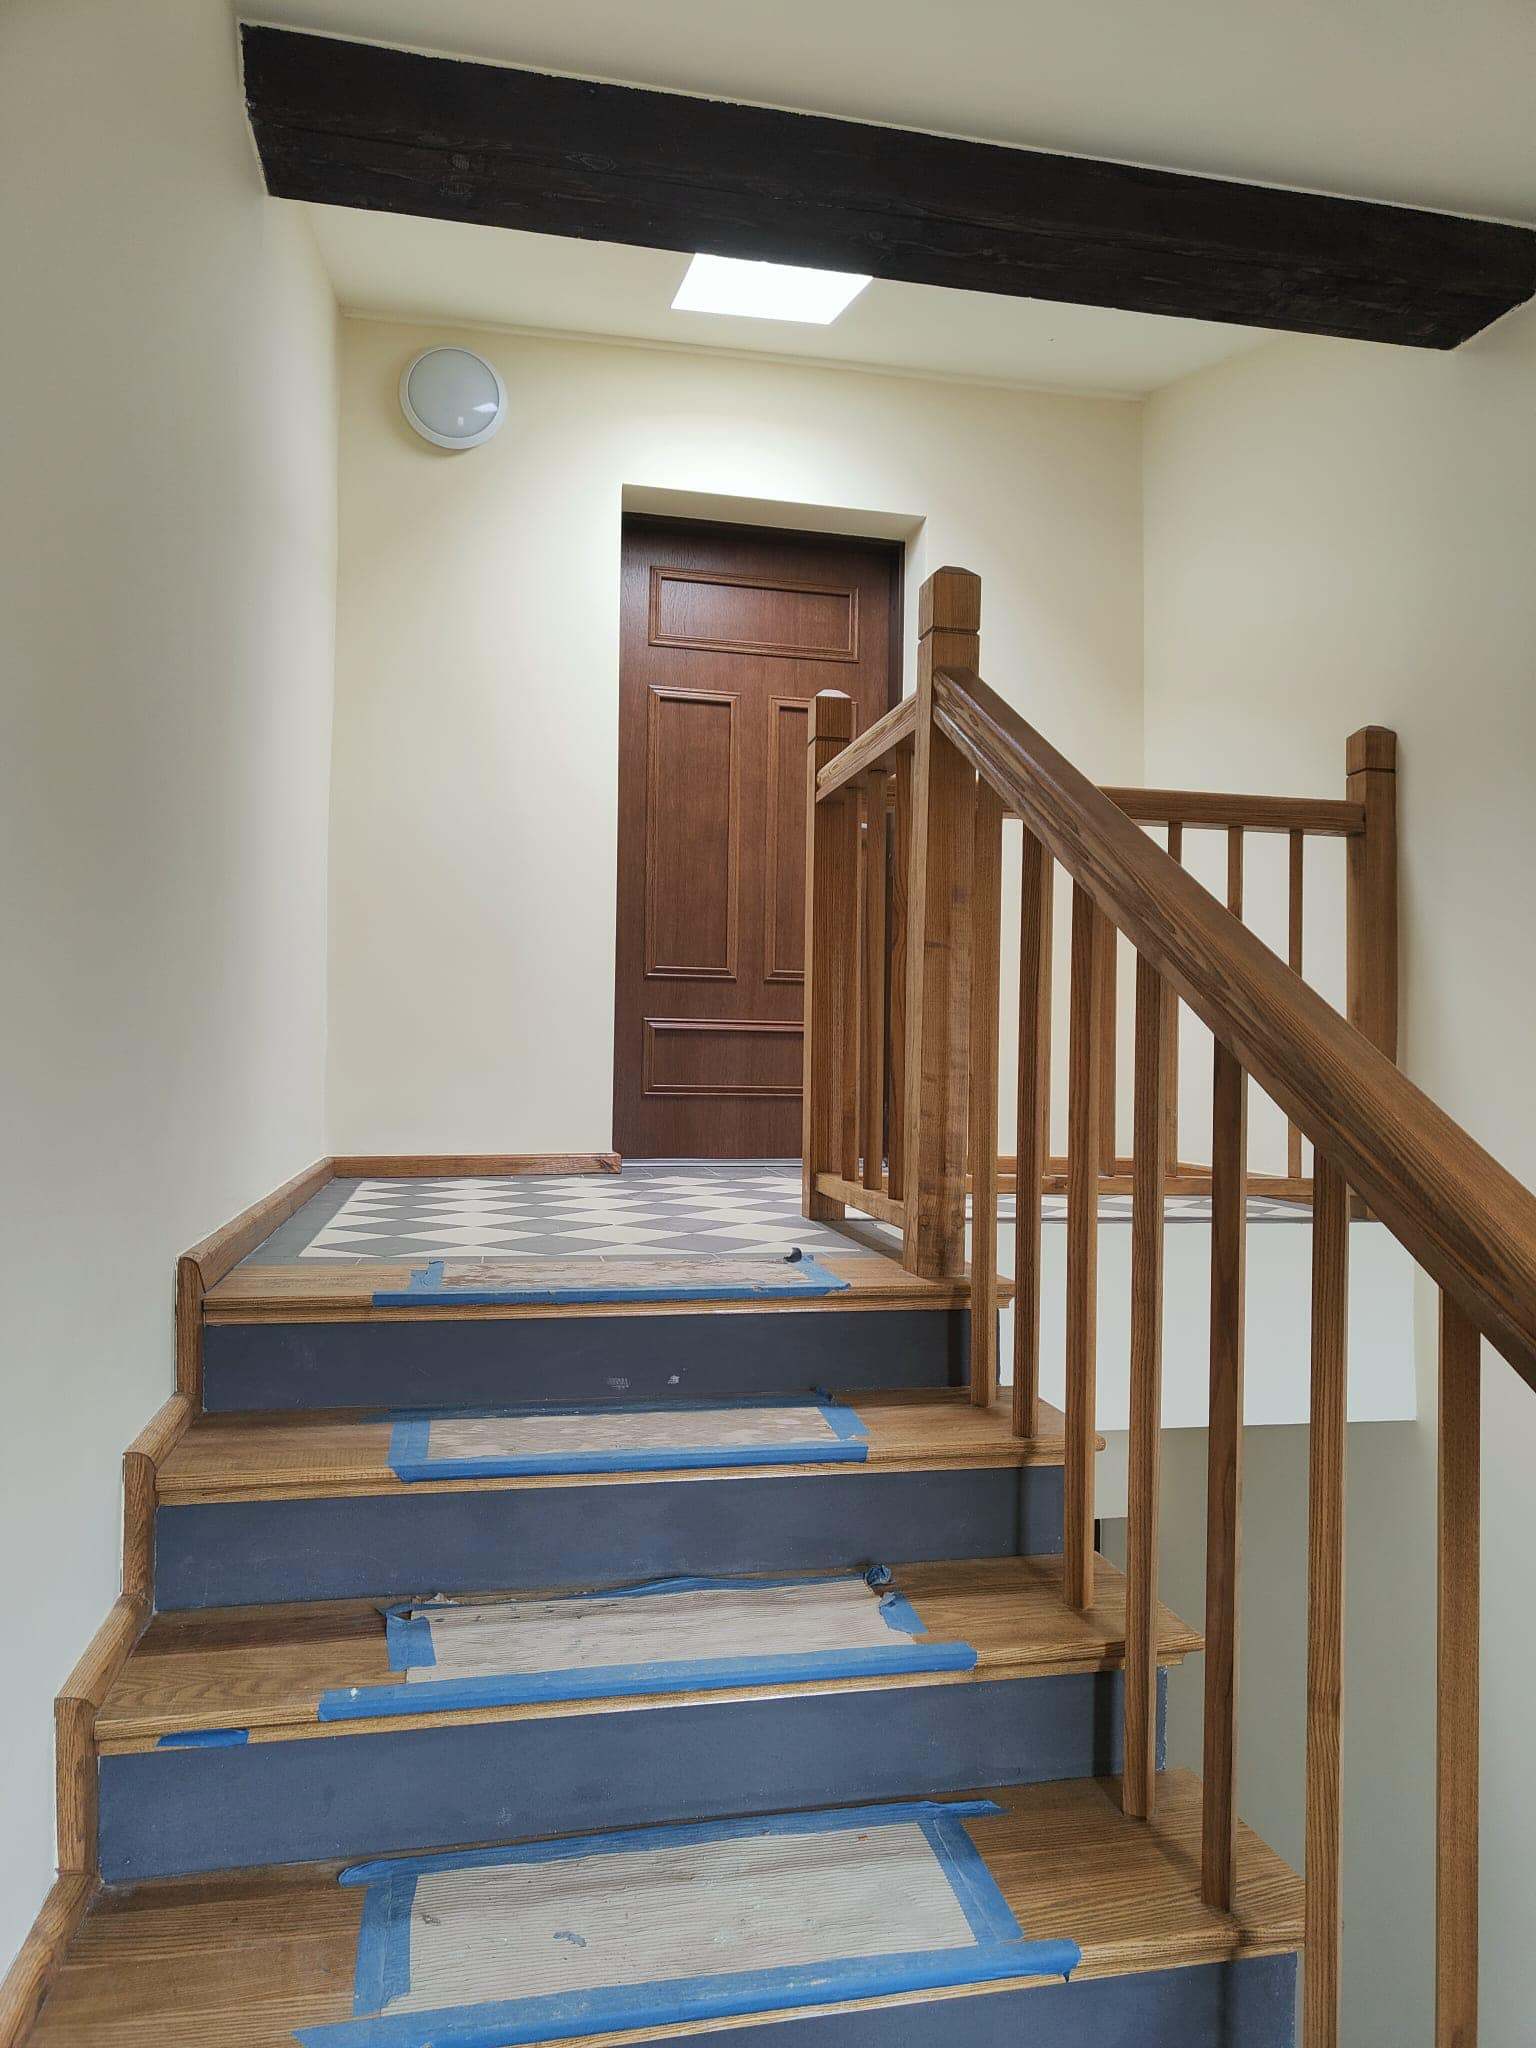 Drewniane schody na klatce schodowej w odnowionym budynku